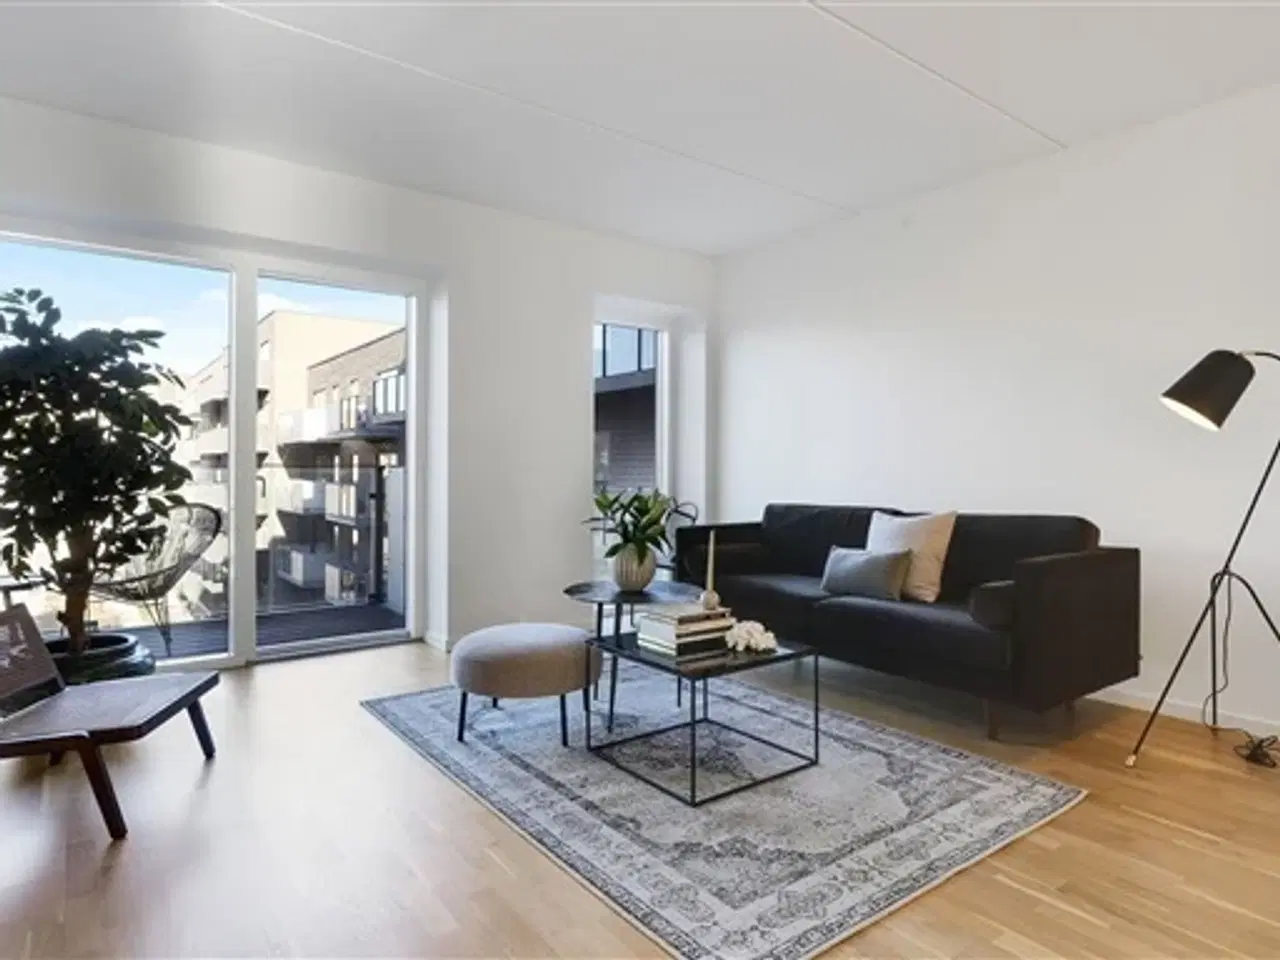 Billede 1 - 104 m2 lejlighed på Else Alfelts Vej, København S, København